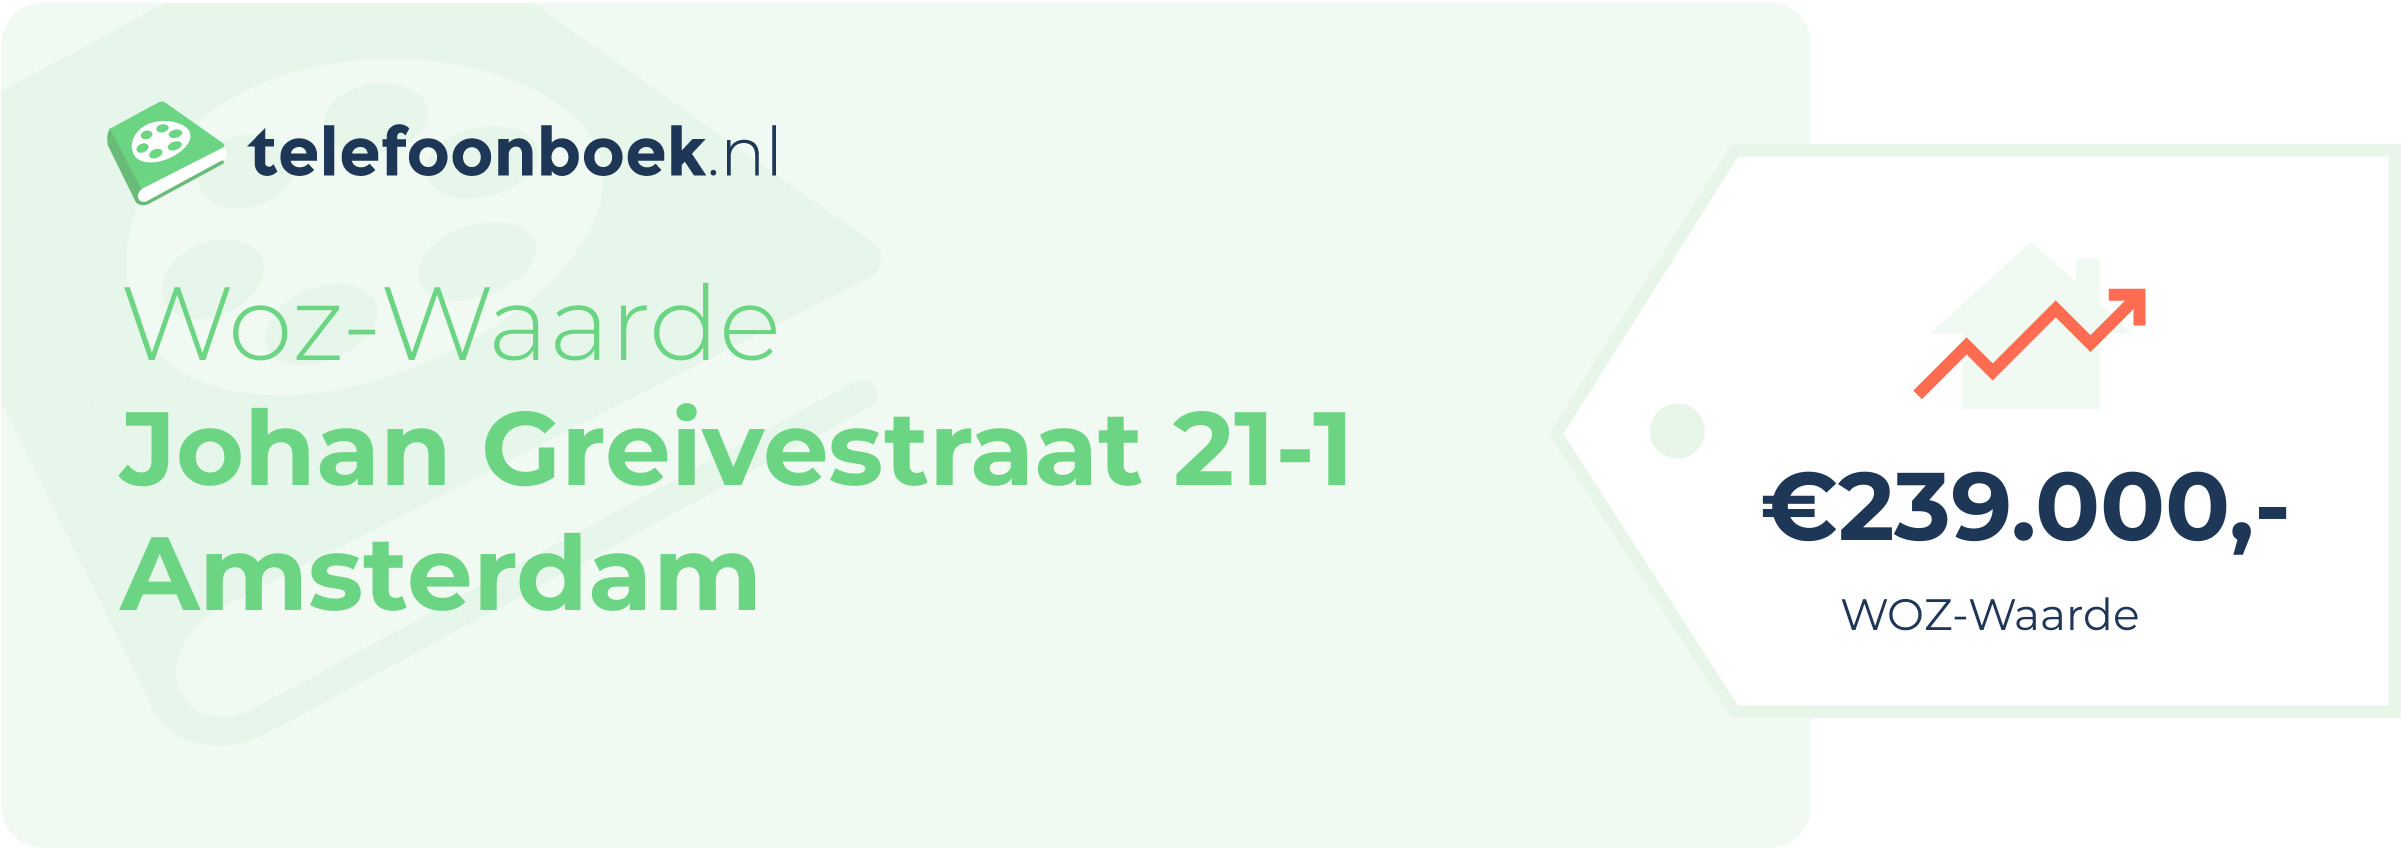 WOZ-waarde Johan Greivestraat 21-1 Amsterdam